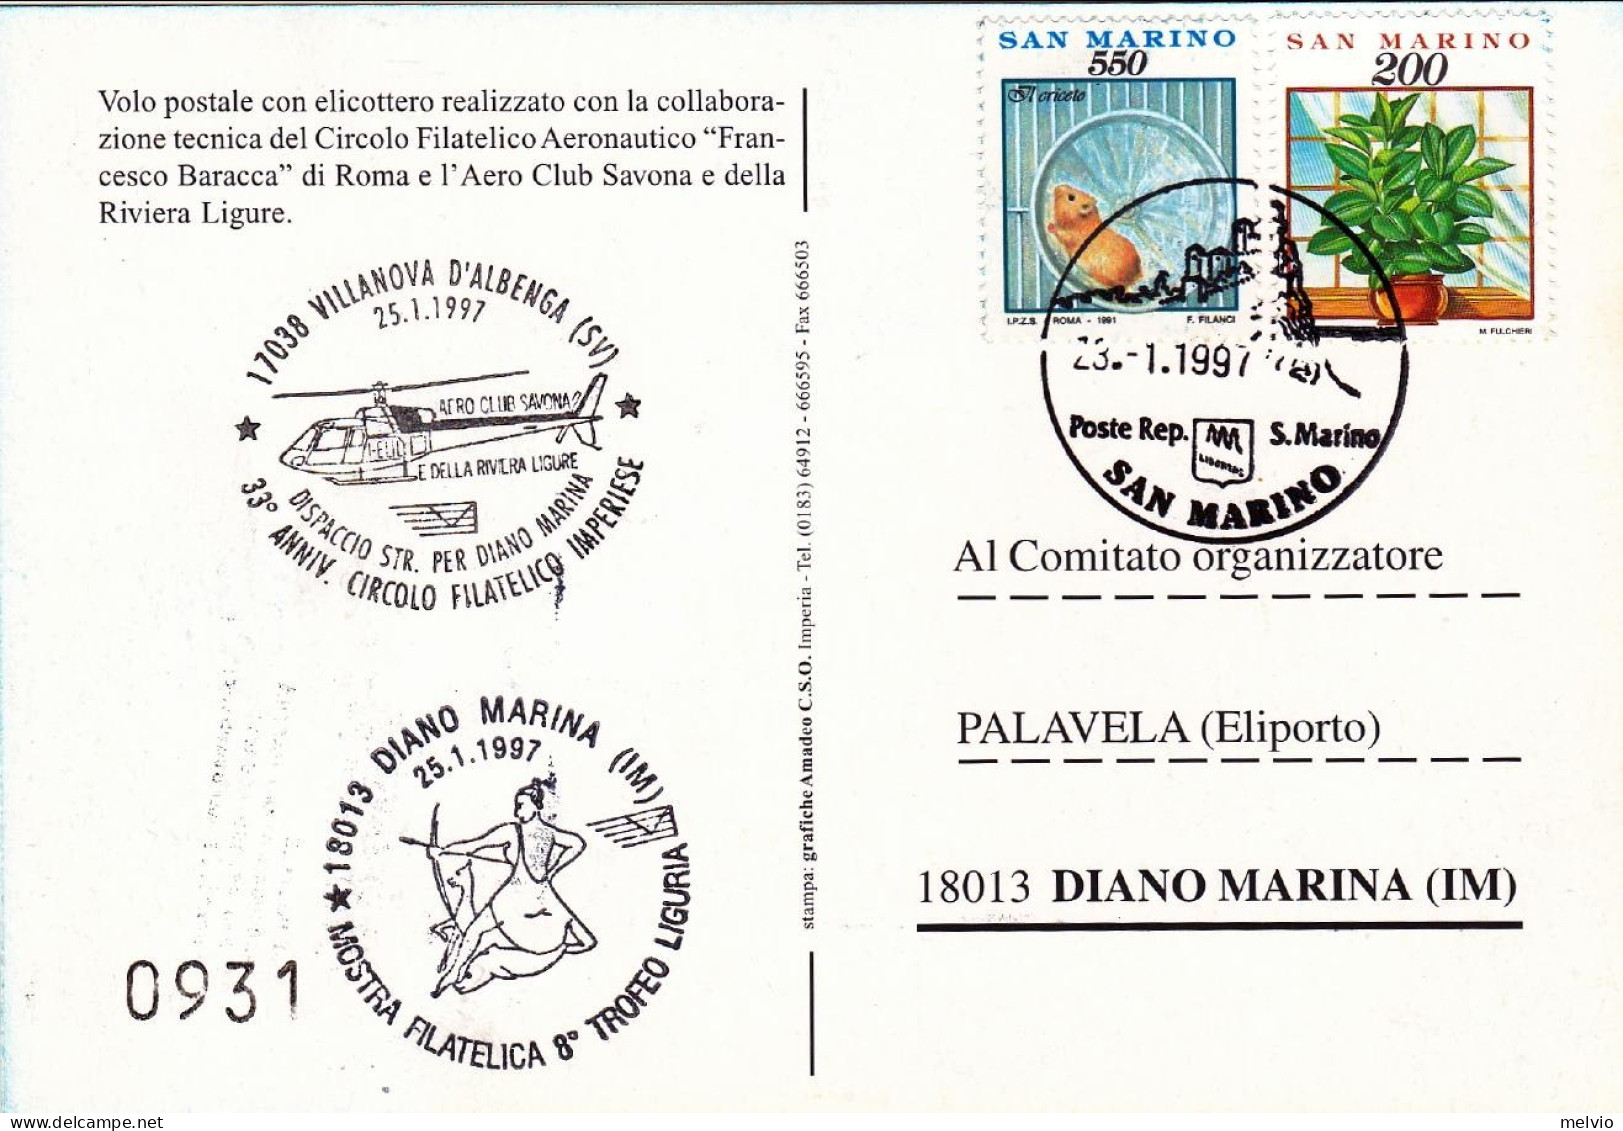 San Marino-1997 Cartolina Numerata Volo Postale Con Elicottero Villanova D'Alben - Luftpost